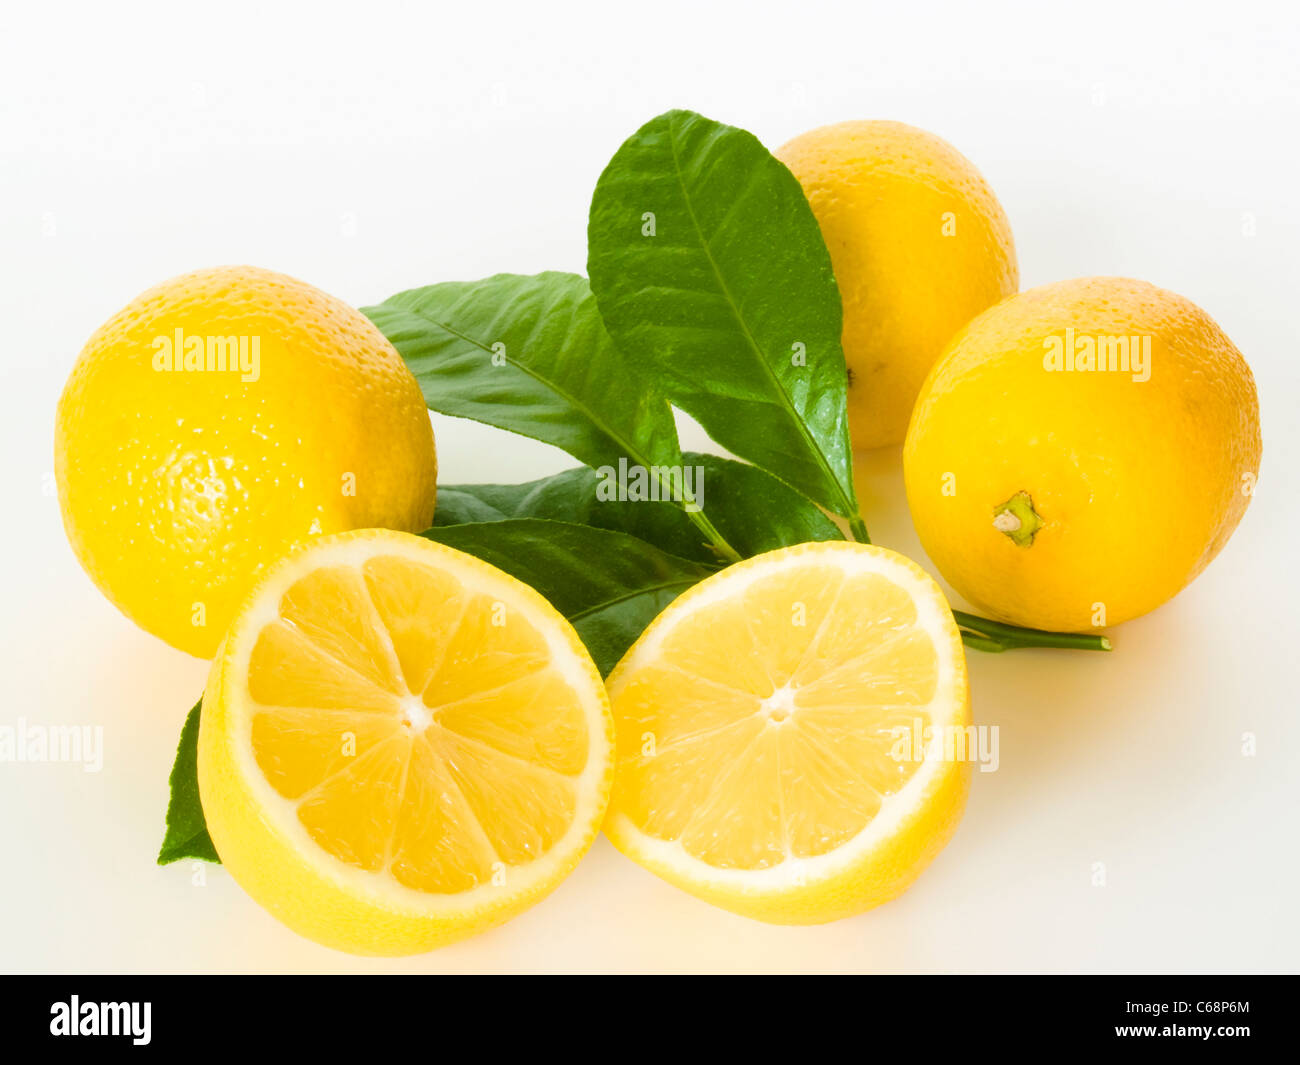 drei Zitronen mit Blättern, davor liegt eine aufgeschnittene Zitrone | three lemons with leaves, in front is a cut lemon Stock Photo